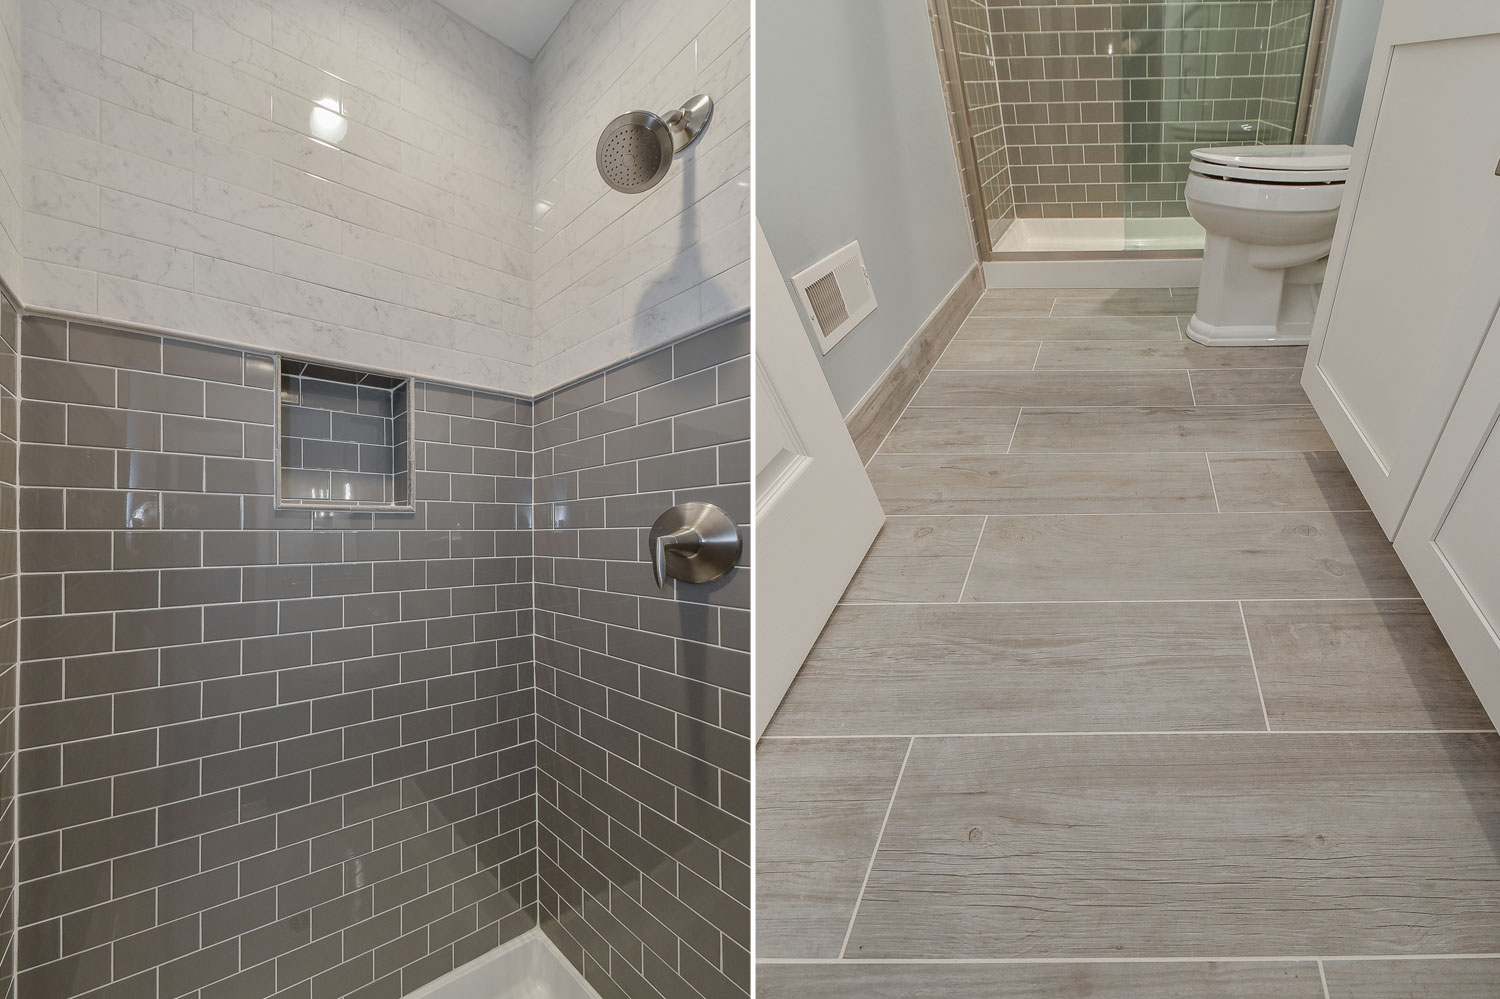 Naperville Basement Bathroom Remodeling Project - Sebring Design Build